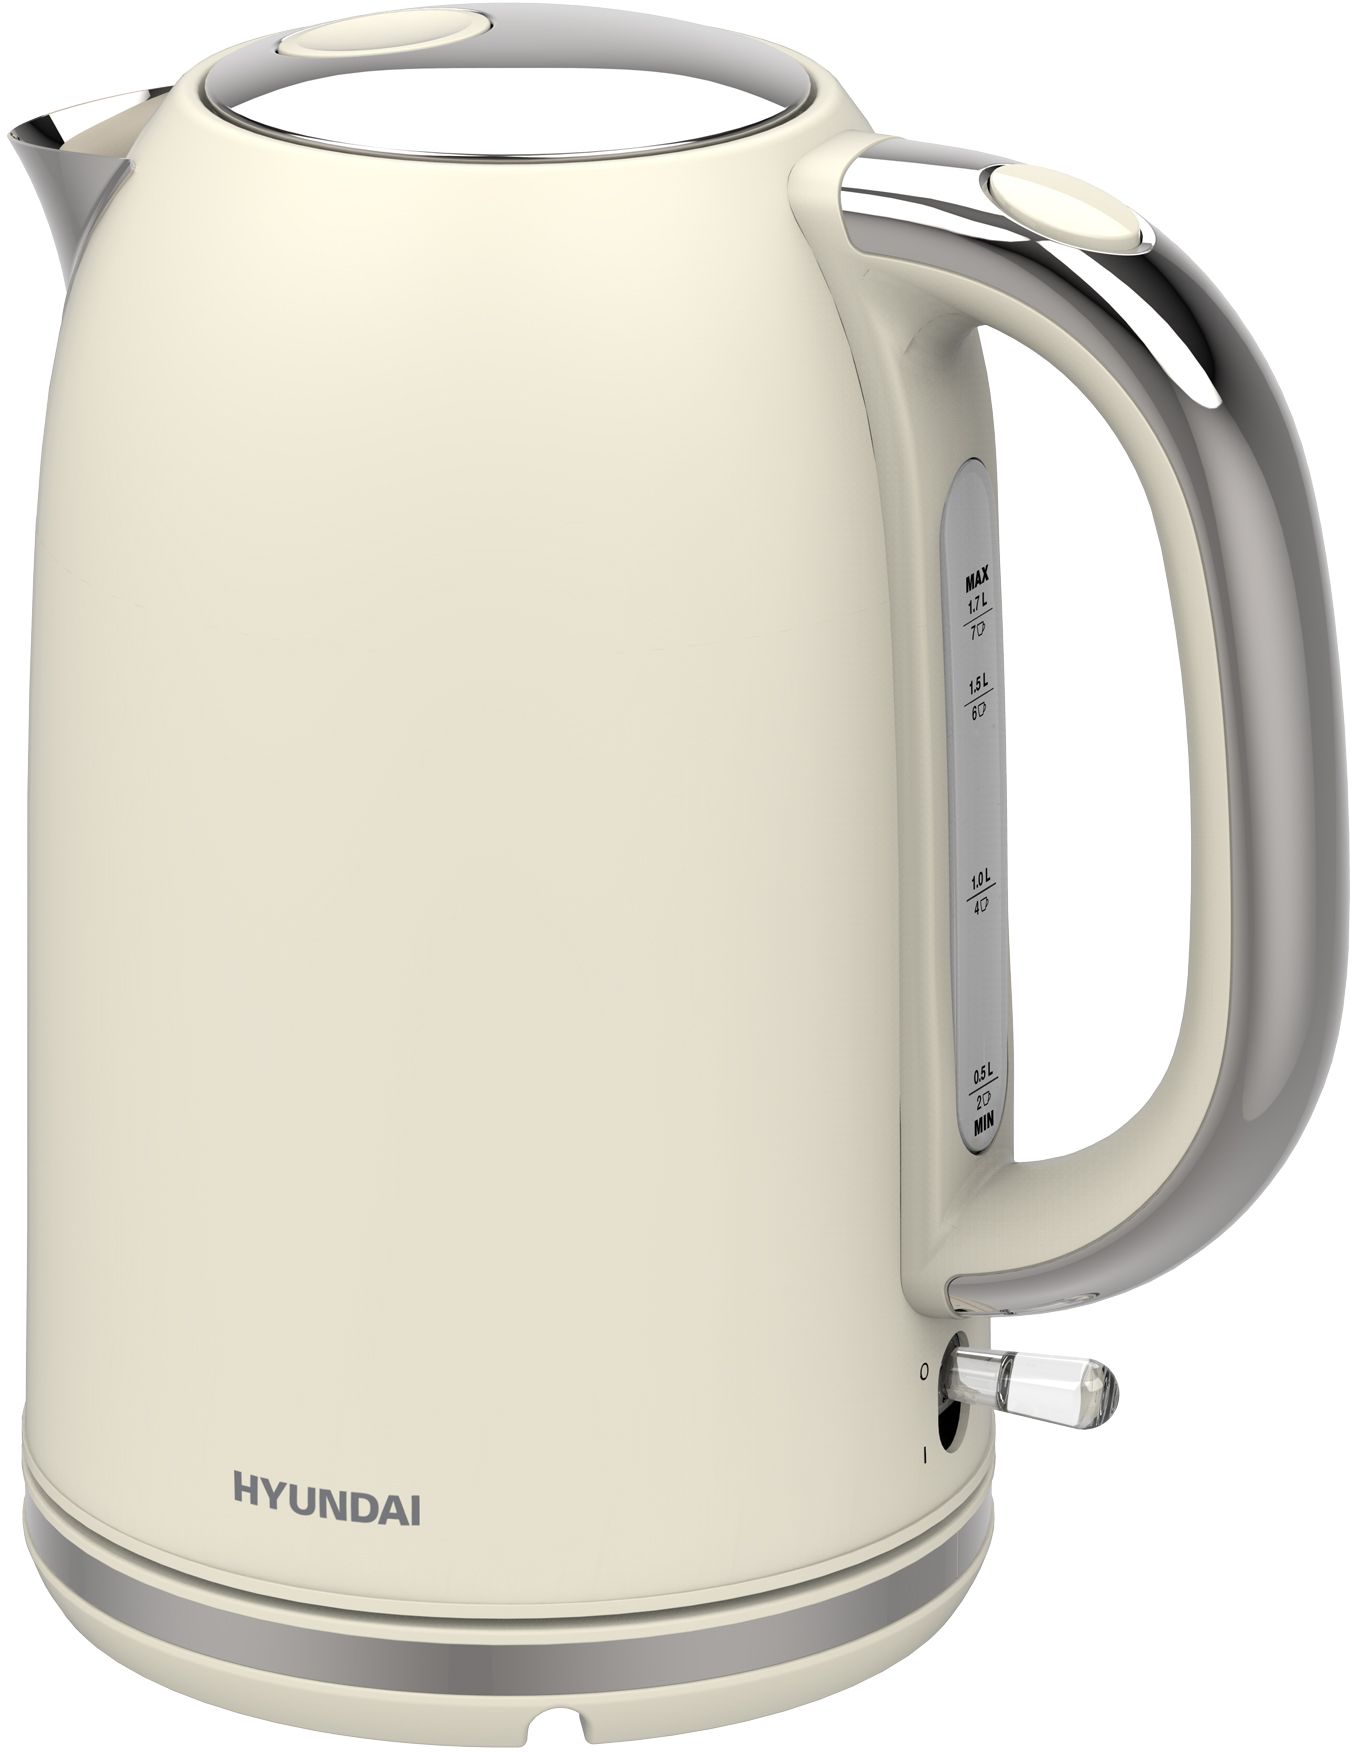 Чайник электрический HYUNDAI HYK-S9900 1.7 л бежевый электрический молочный пенообразователь ручной пенообразователь usb аккумуляторный кофе 3 скорости whisk 2 1 яичный взбиватель идеальный кофе